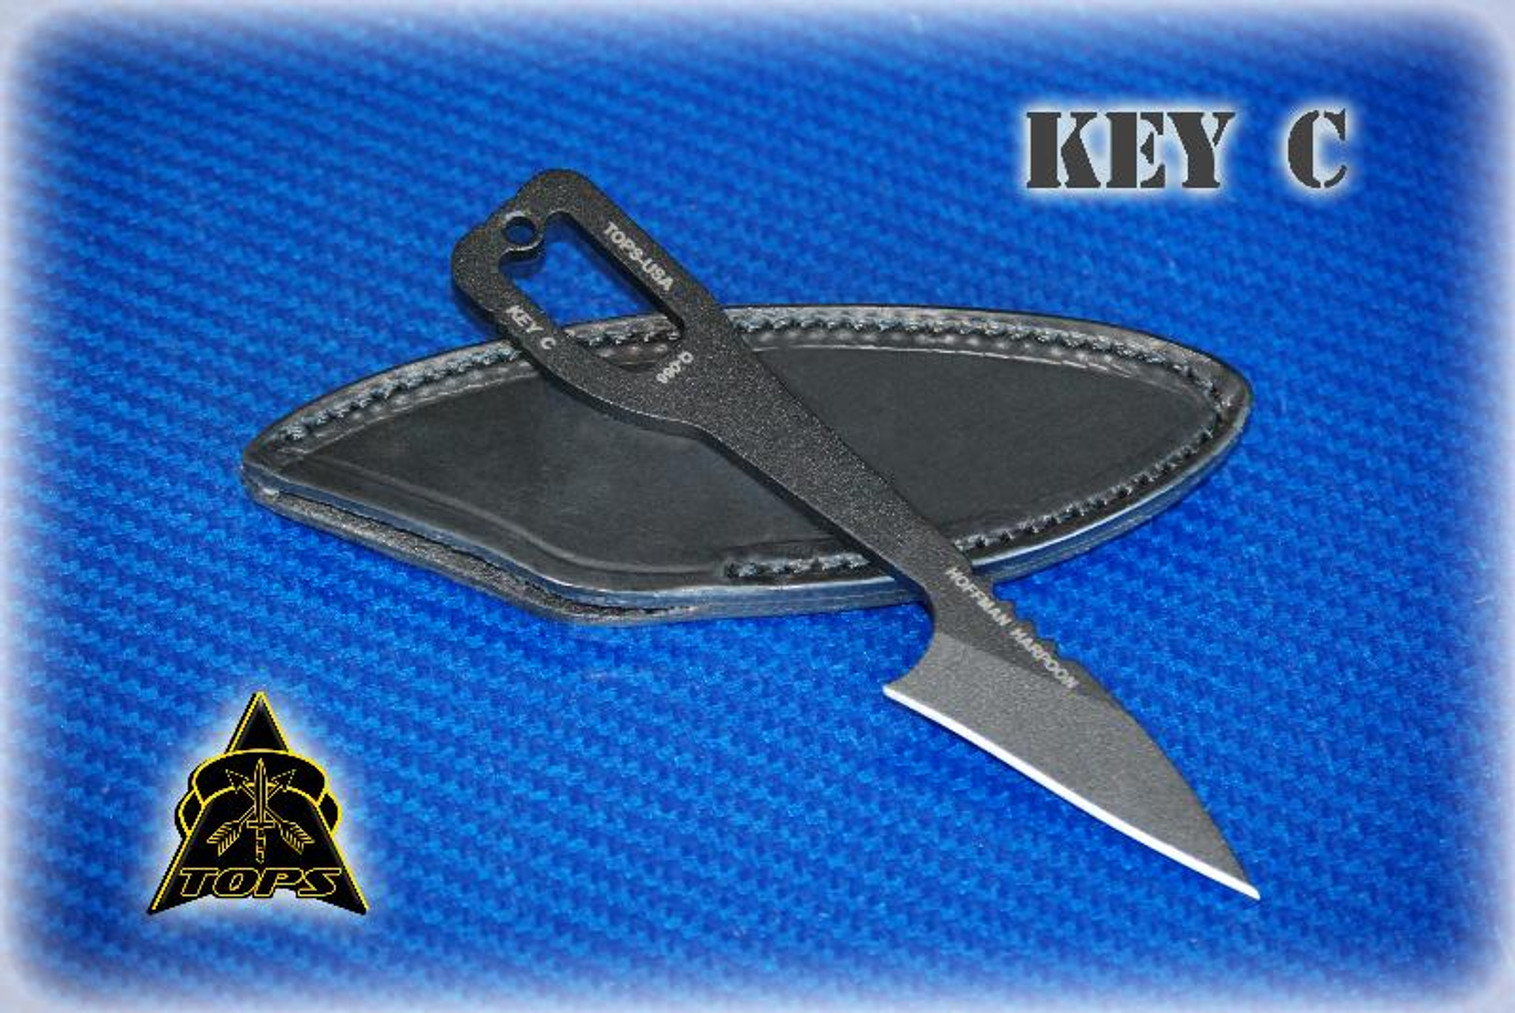 TOPS Key C w/Leather Sheath